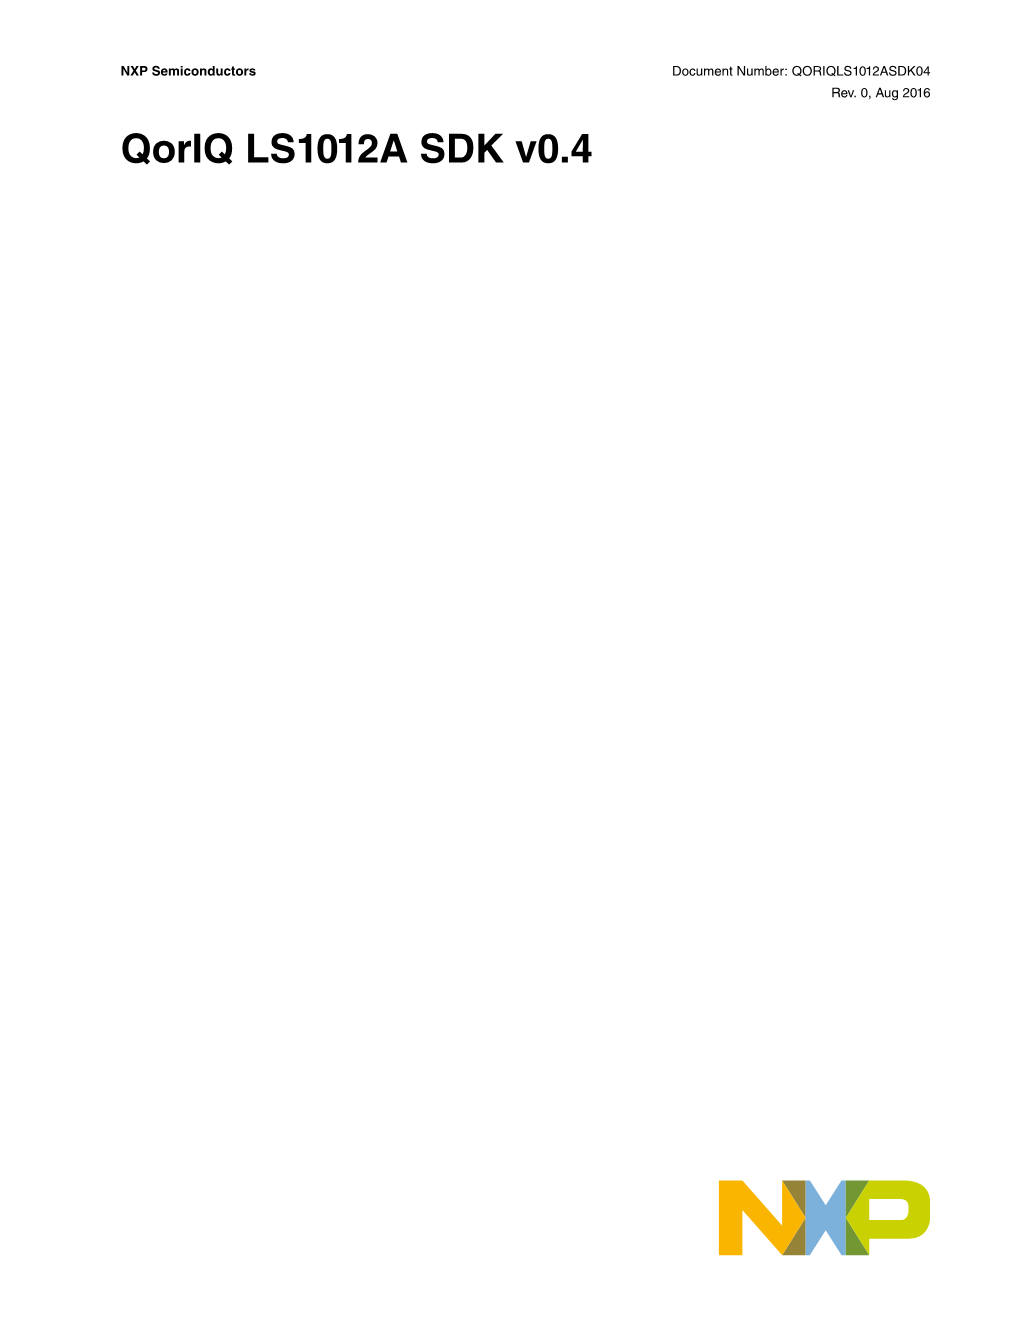 Qoriq LS1012A SDK V0.4 Contents